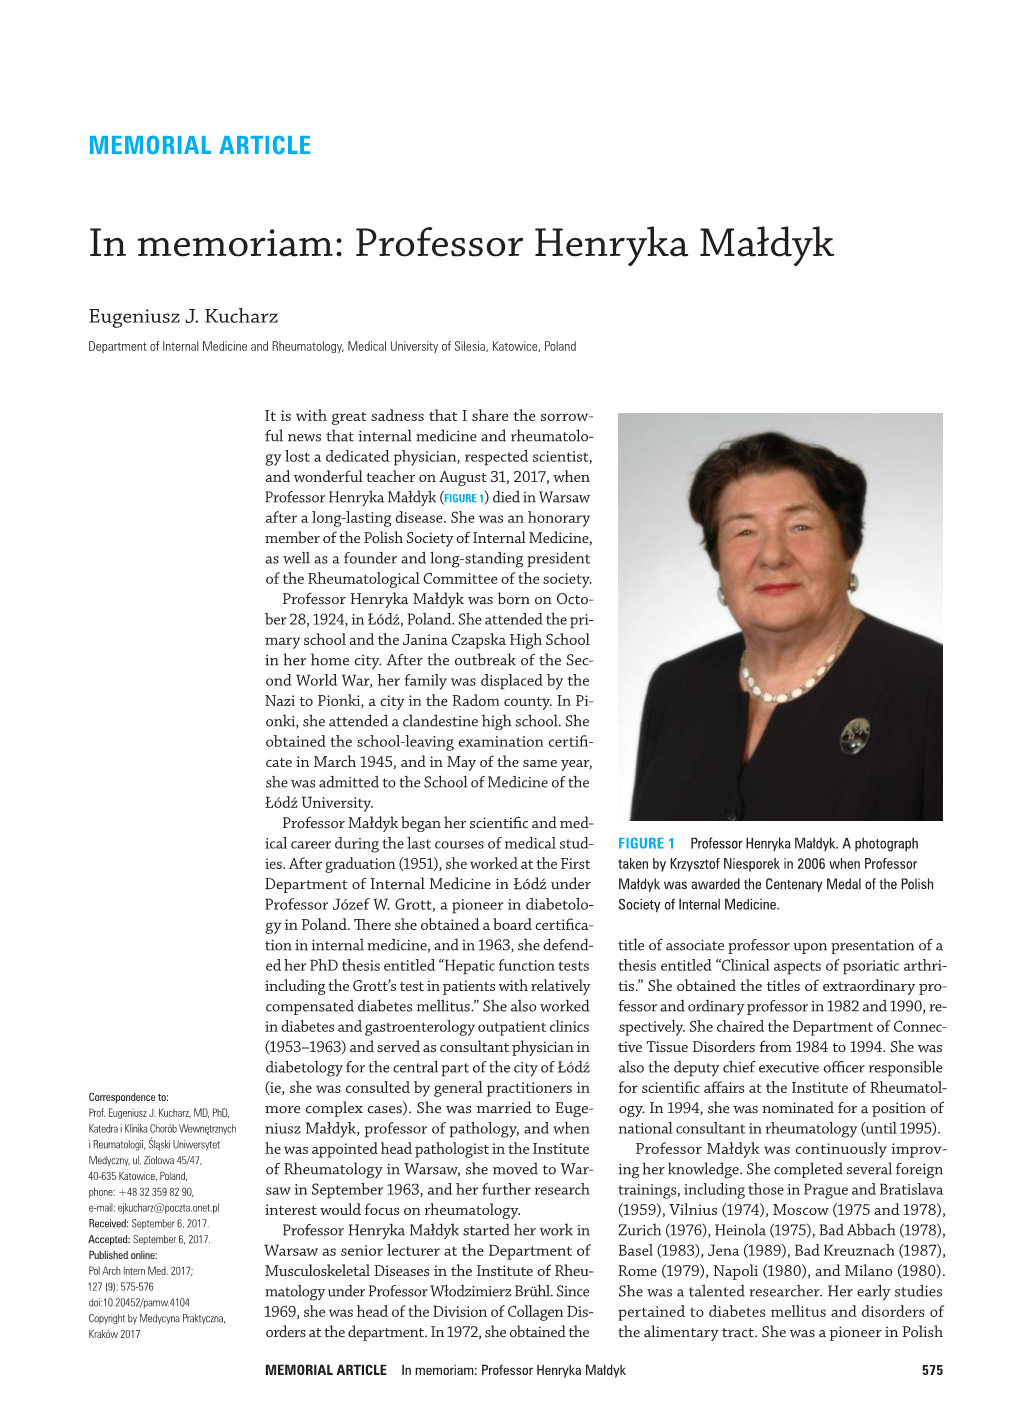 In Memoriam: Professor Henryka Małdyk